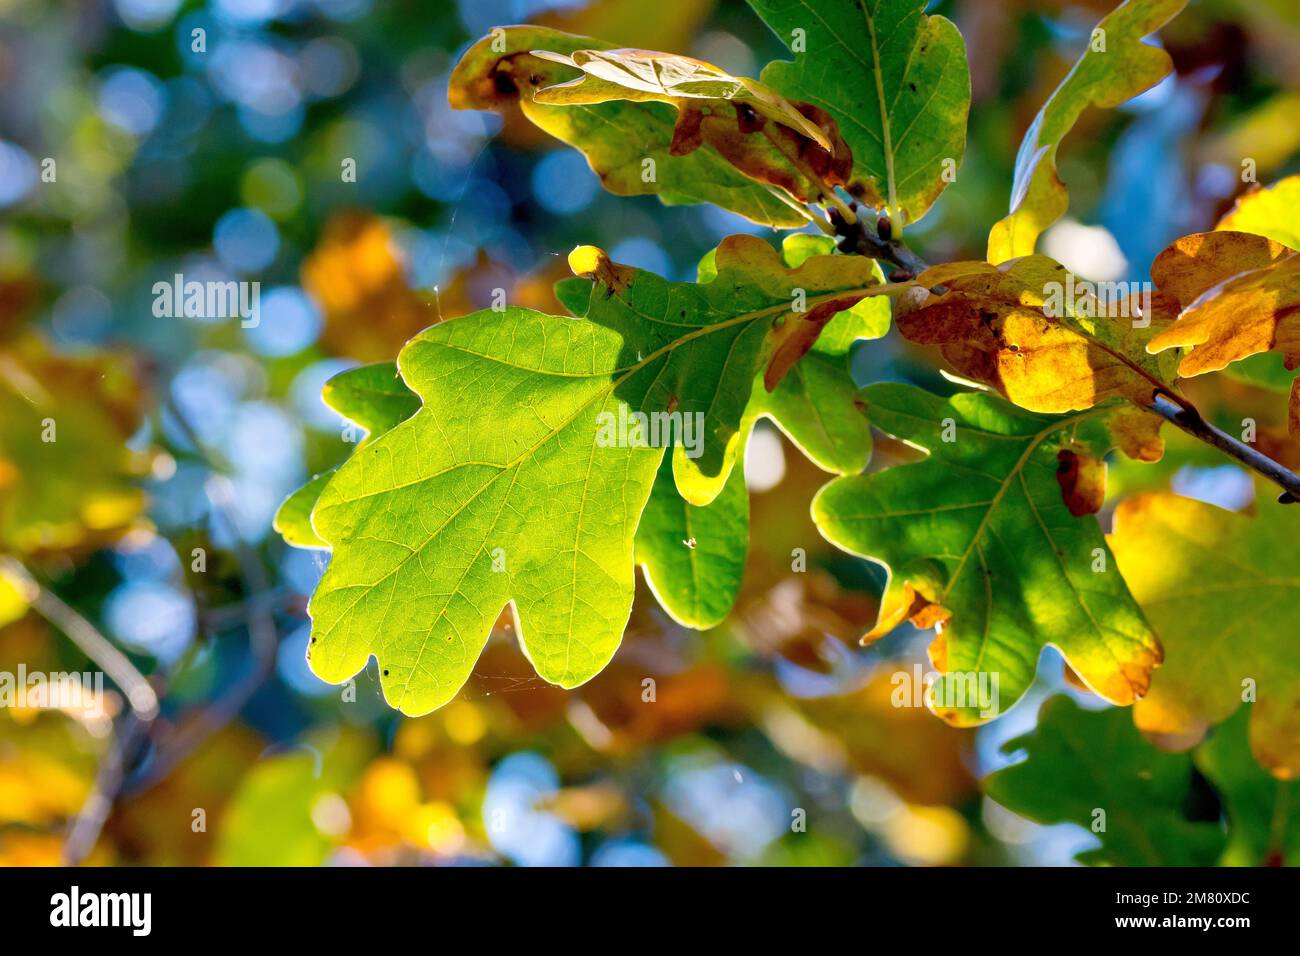 Quercia sesile o durmast (quercus petrea), forse quercia inglese o peduncola (quercus robur), primo piano di foglie retroilluminate che cambiano colore in autunno. Foto Stock